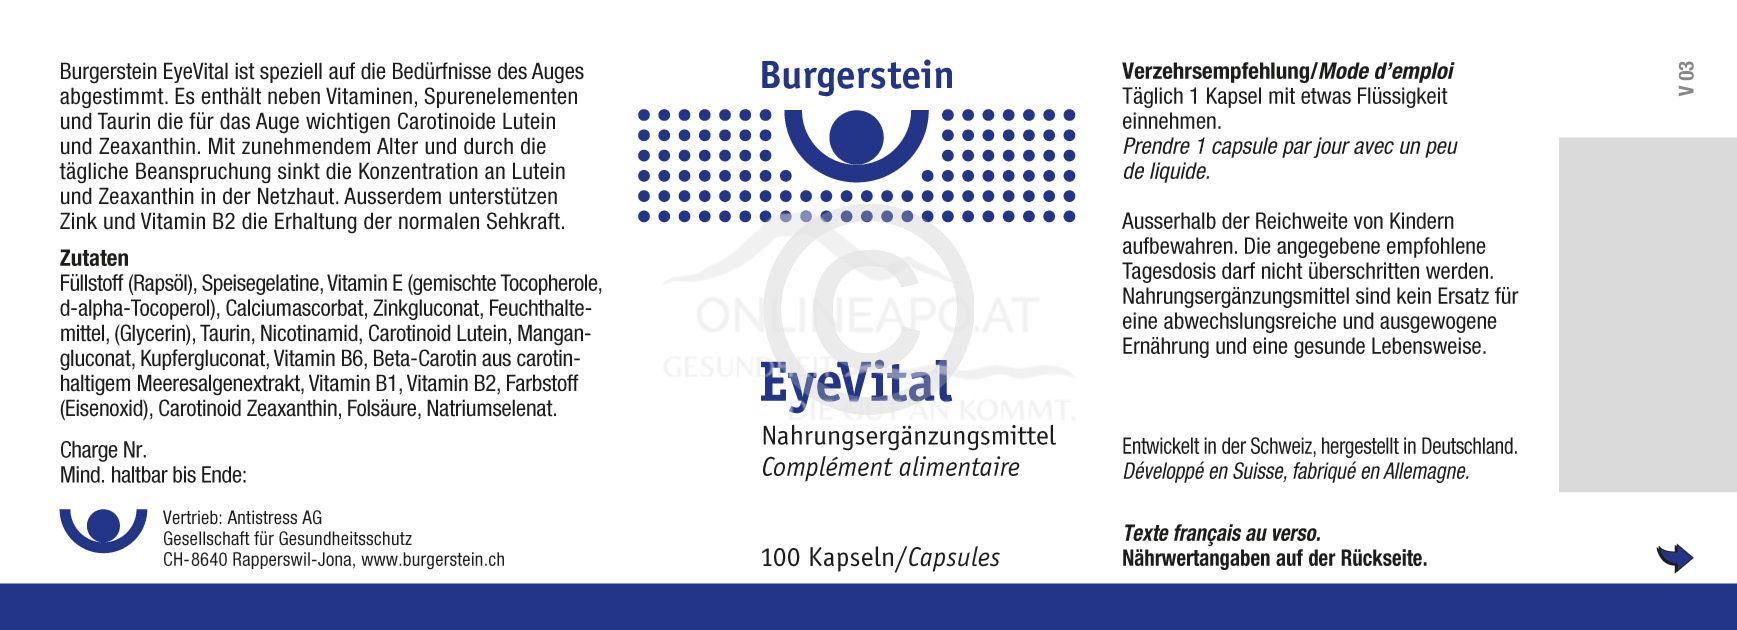 Burgerstein EyeVital Kapseln